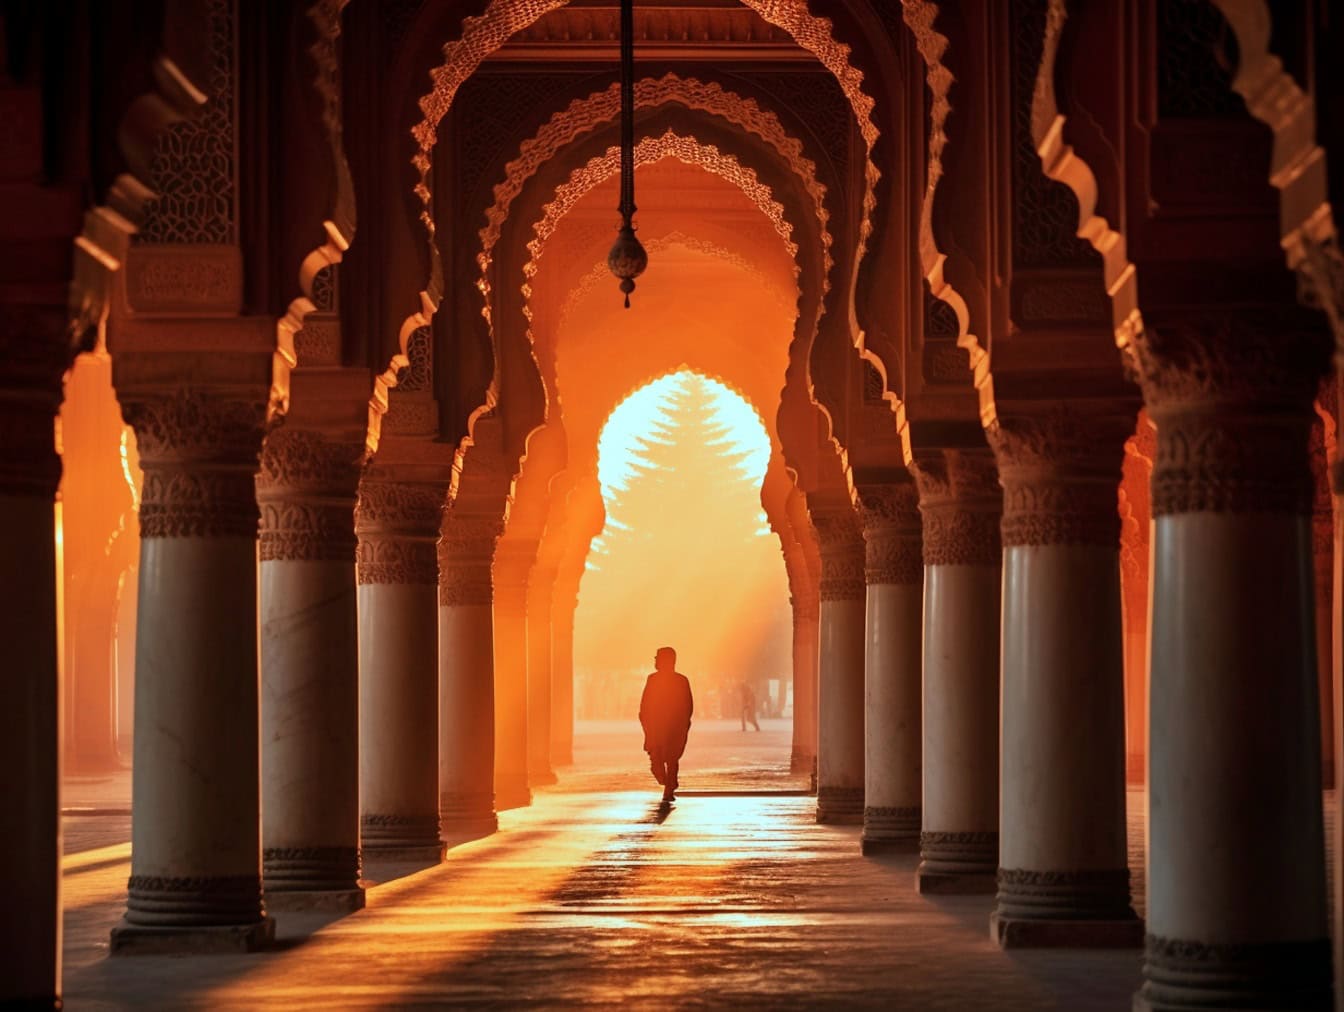 Coucher de soleil avec la silhouette d’un homme marchant à travers l’arche ornée d’une belle mosquée islamique à l’architecture arabe traditionnelle